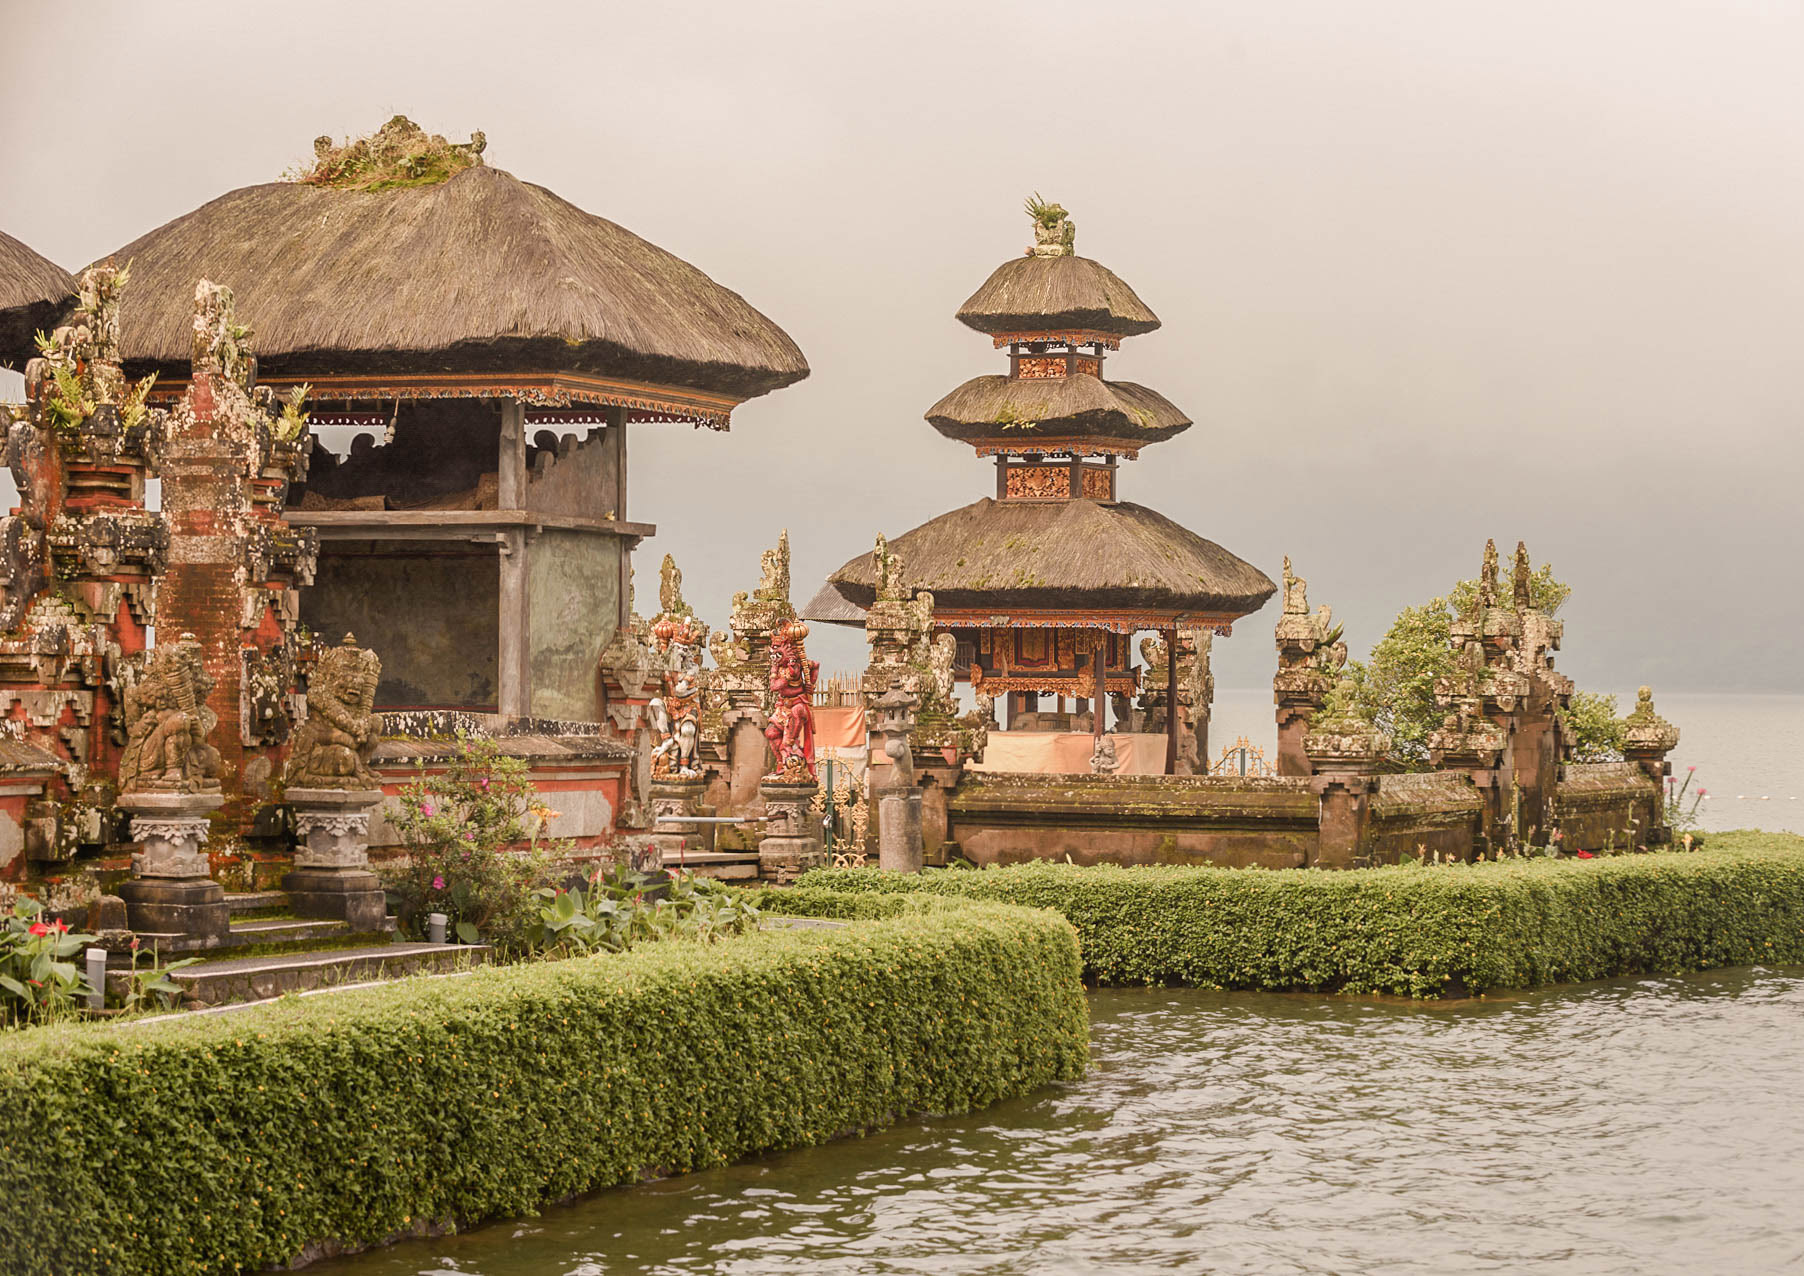 Co warto zobaczyć w Indonezji - Bali - blog podrozniczy